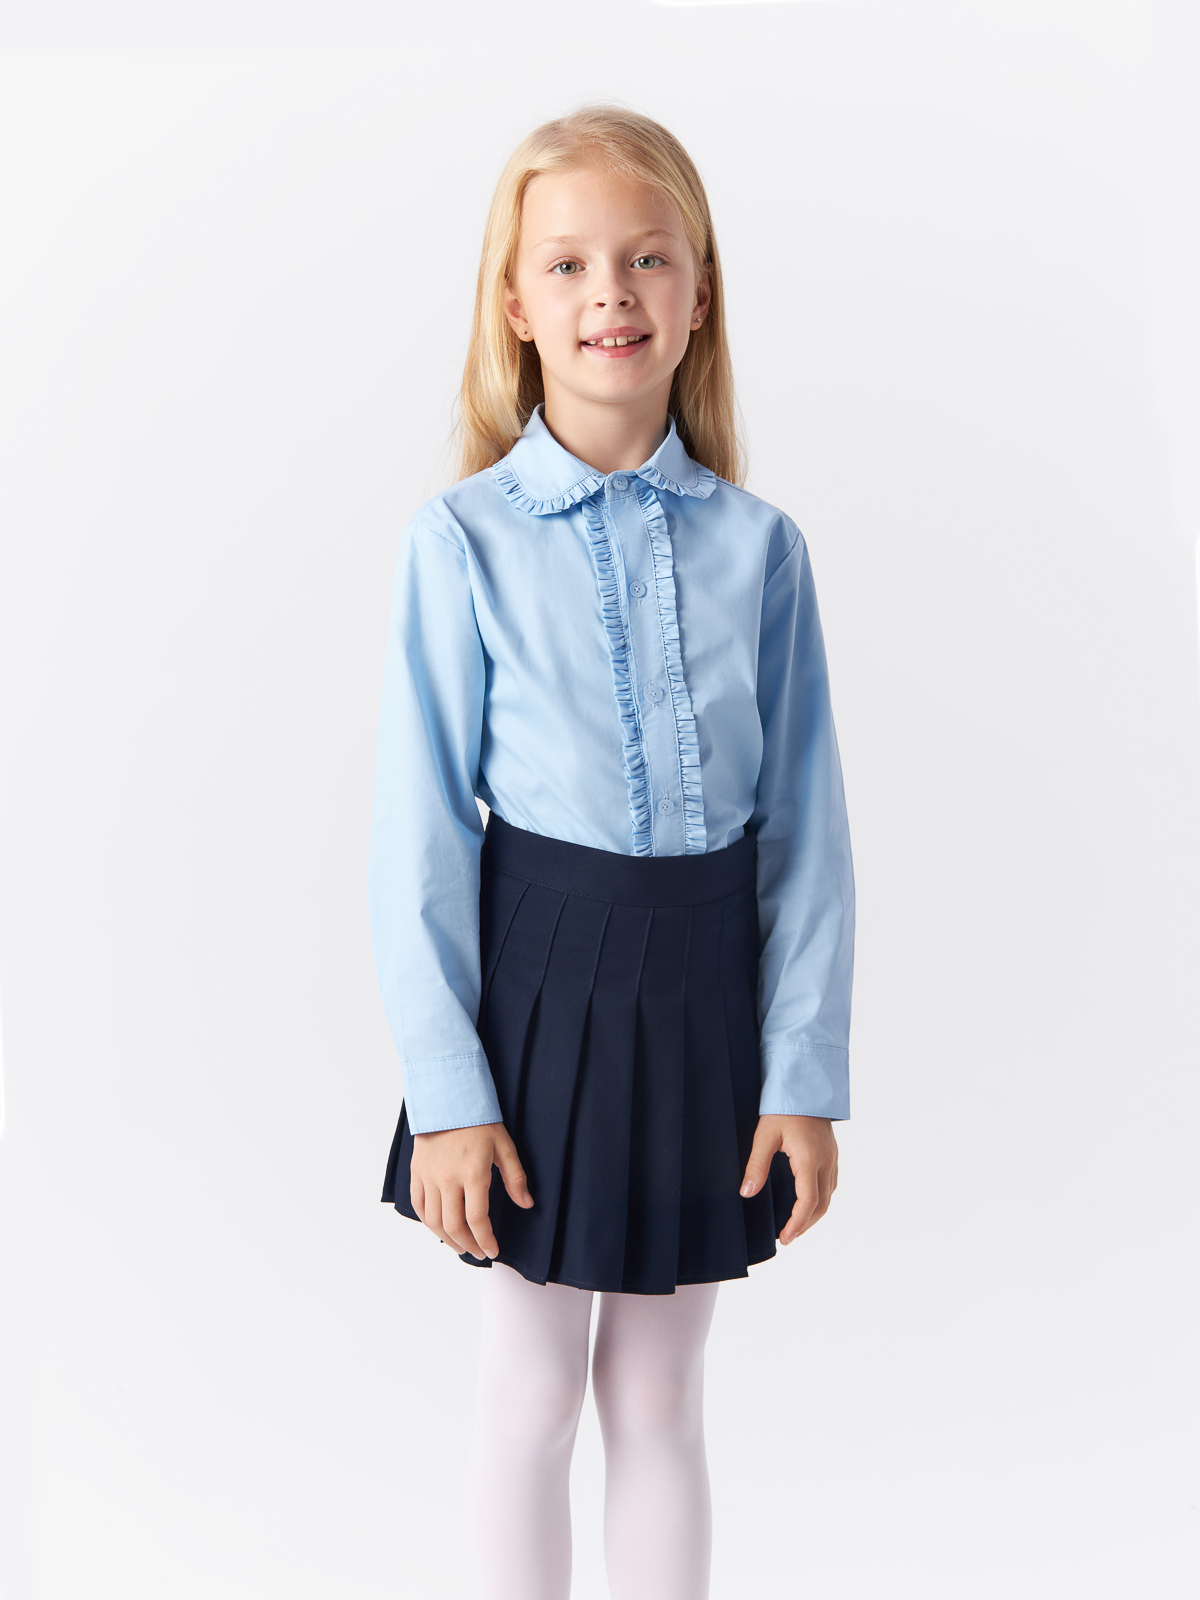 Блузка Yiwu Xflot Supply Chain детская, BS-2blue, размер 150 см блузка трикотажная школьная белая button blue 158